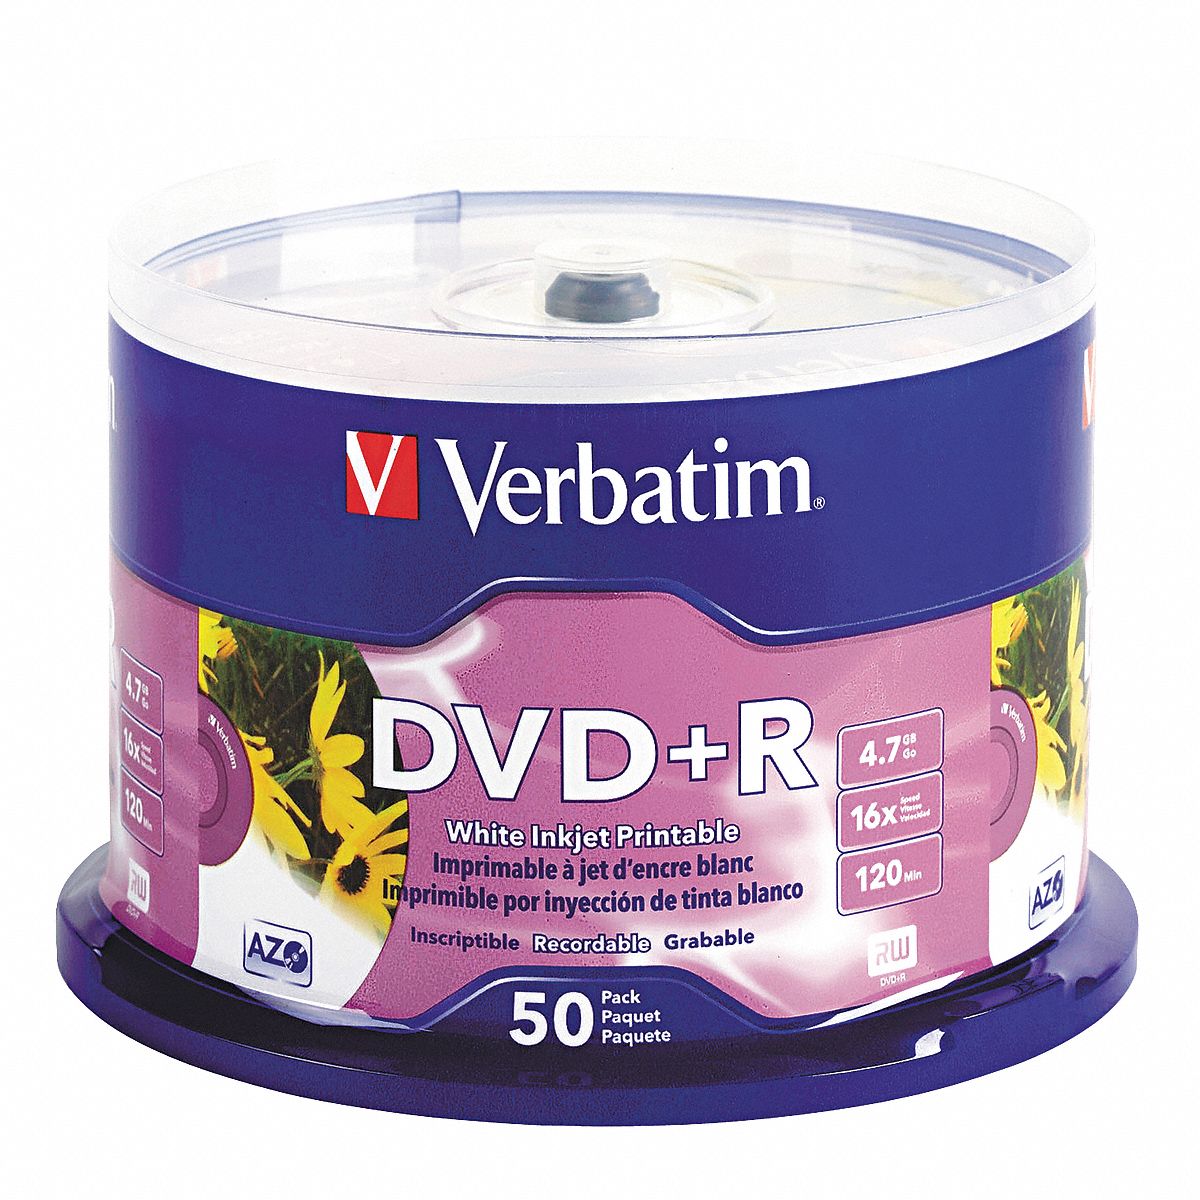 verbatim-dvd-r-disc-4-7-gb-capacity-16x-speed-14f855-ver95136-grainger